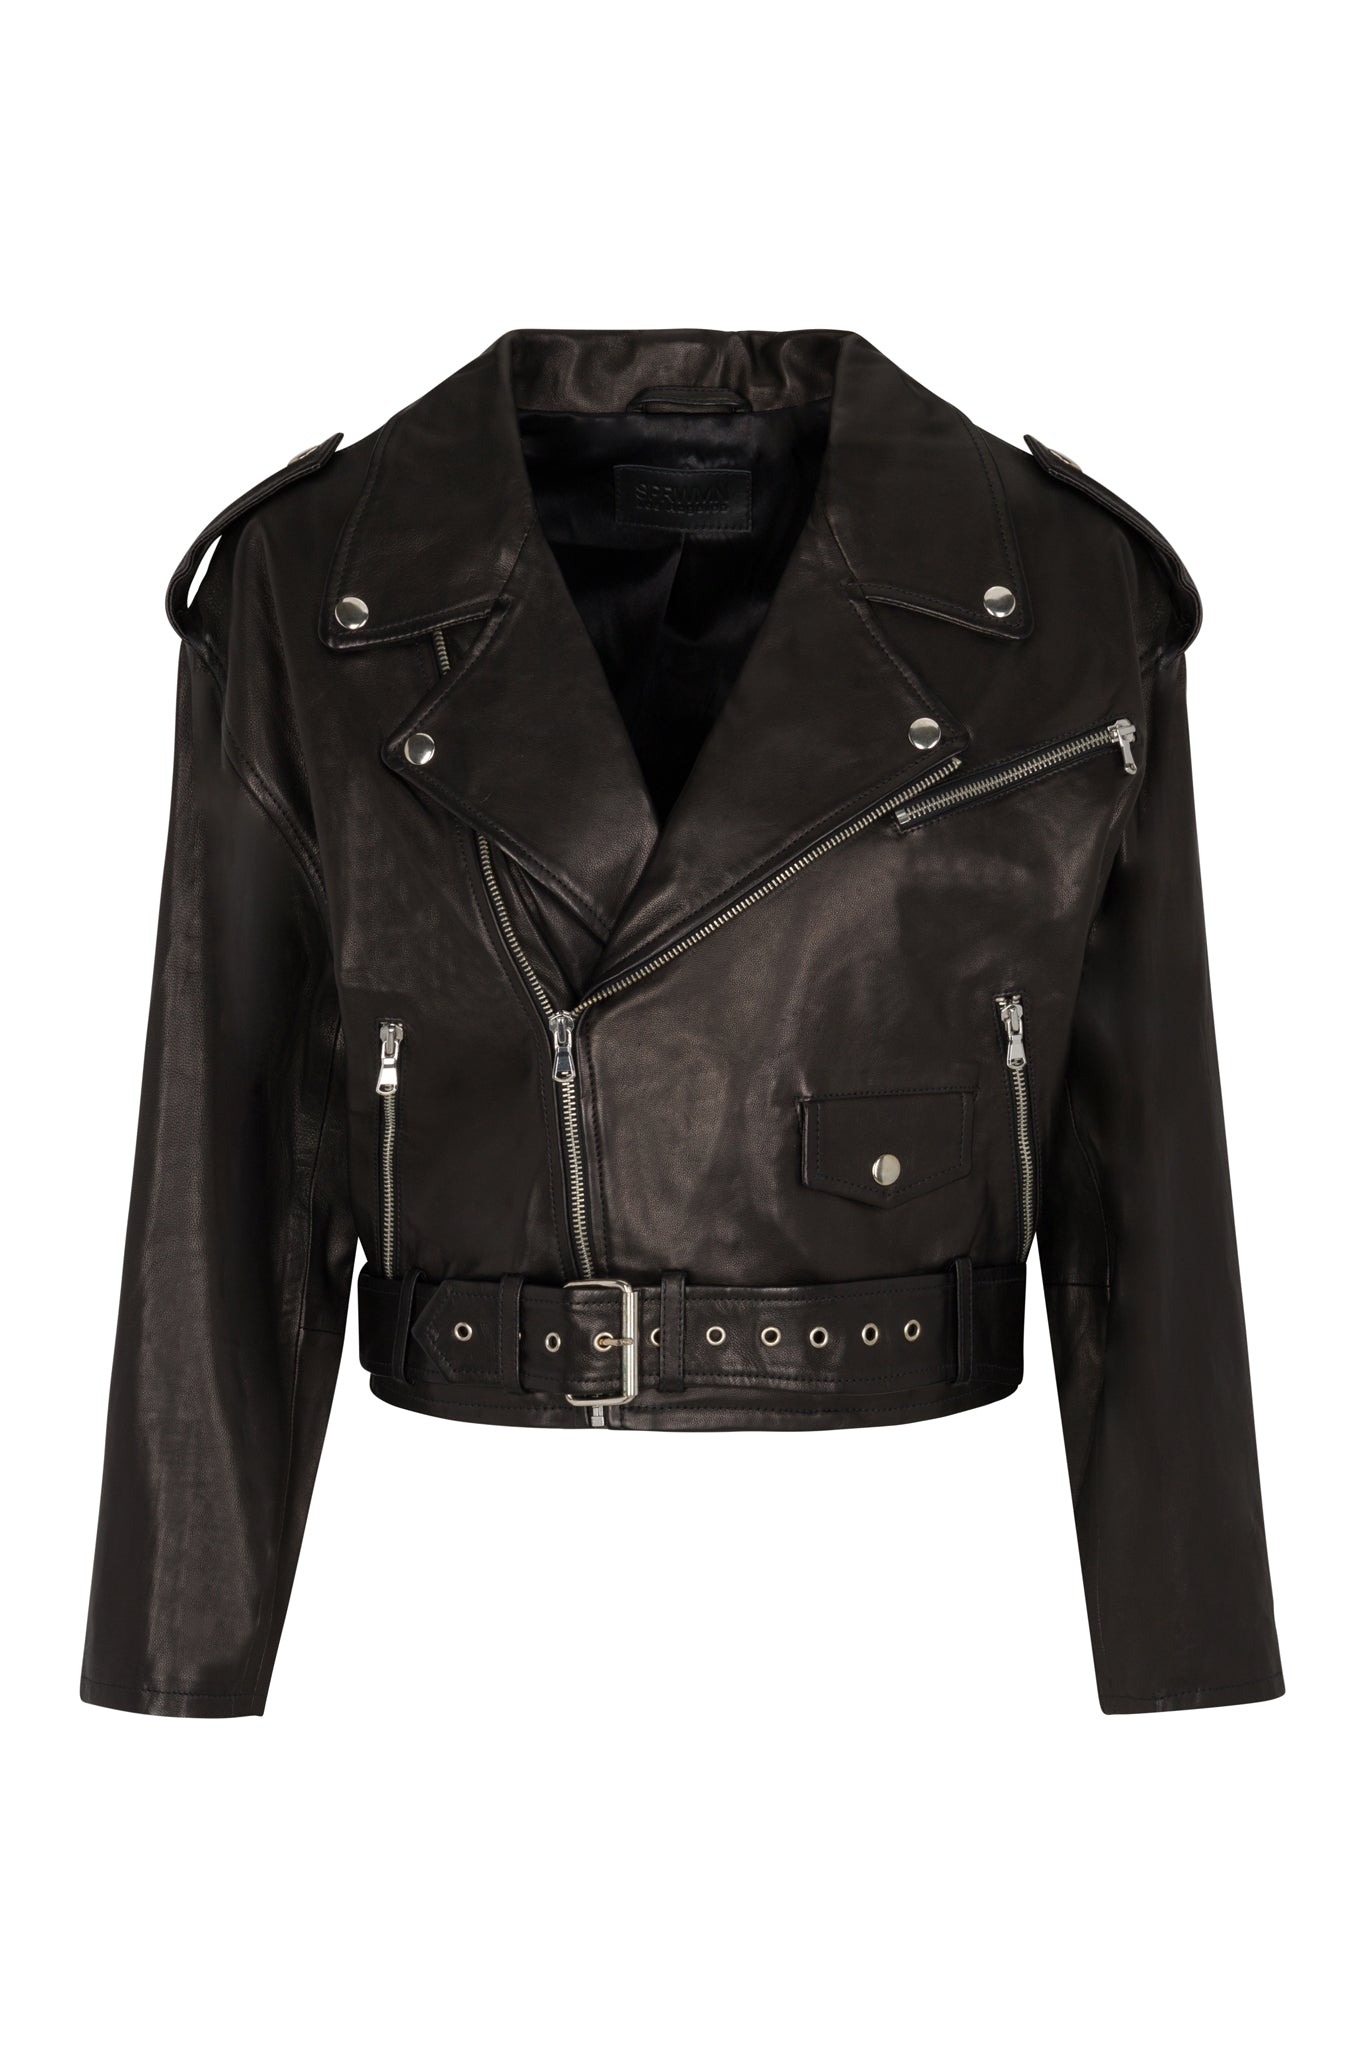 SPRWMN Black Eyelet Lace-Up Leather Moto Jacket